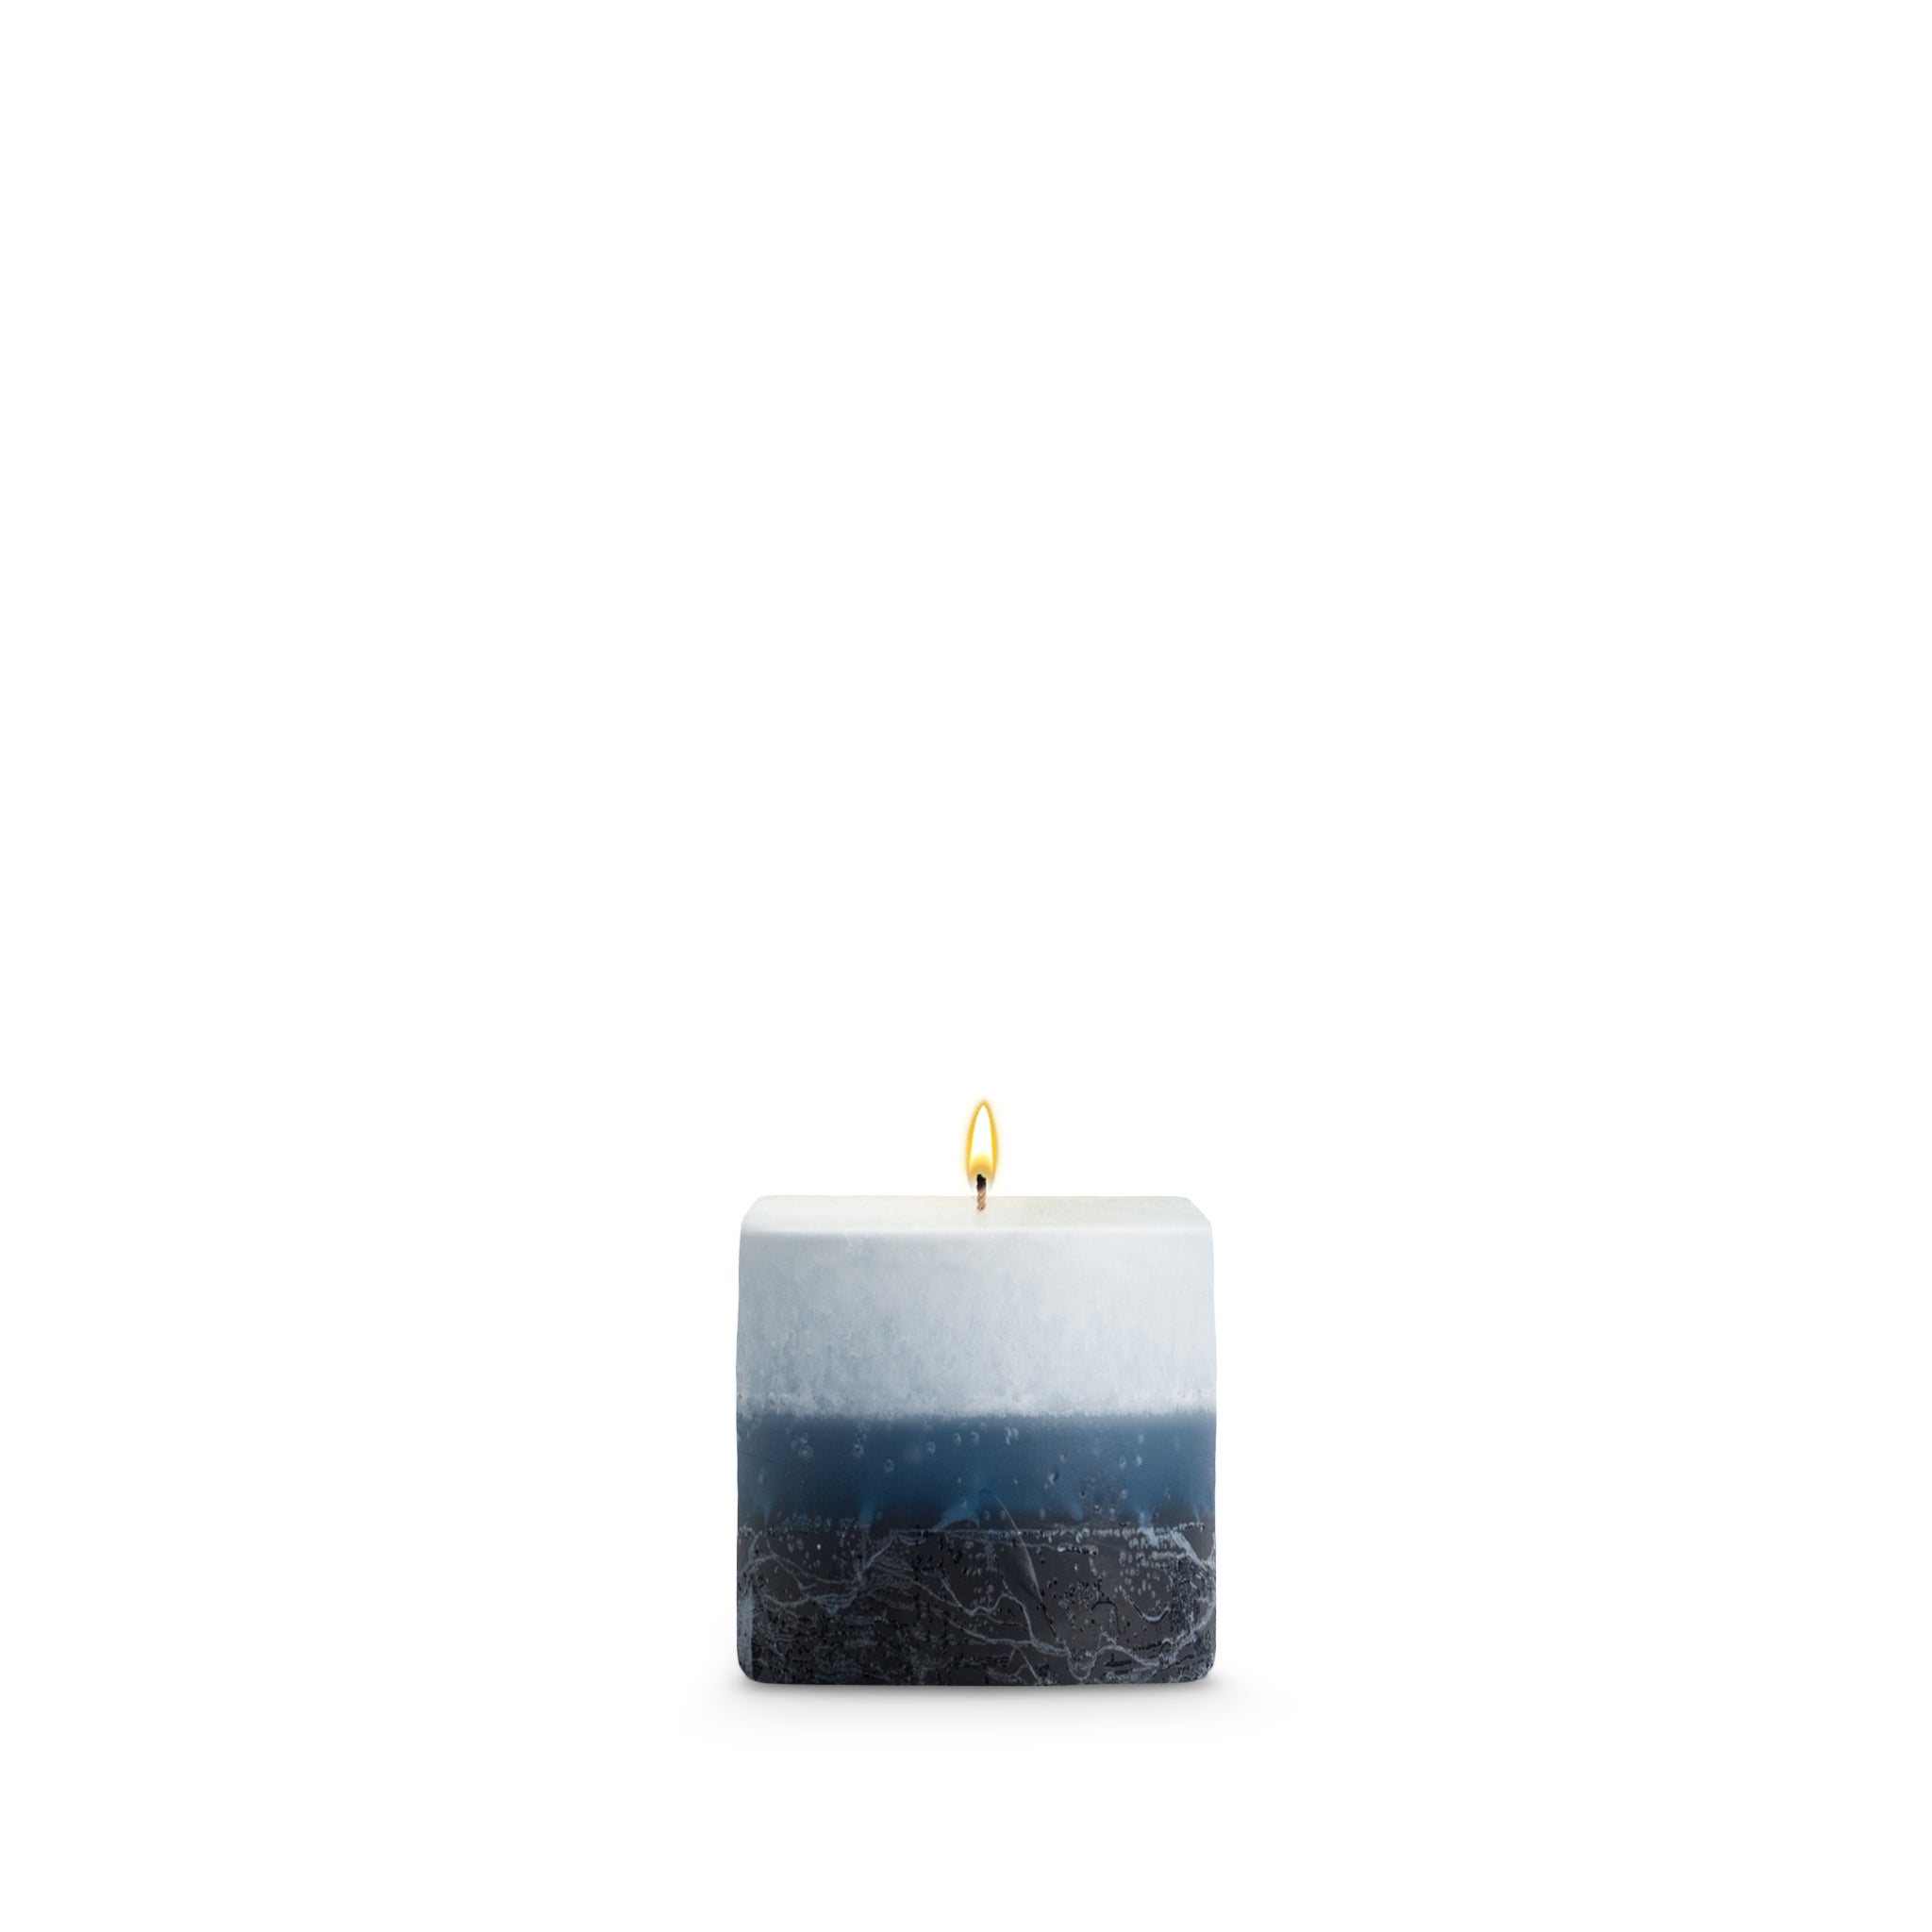 Mer Du Corail Pillar Candles